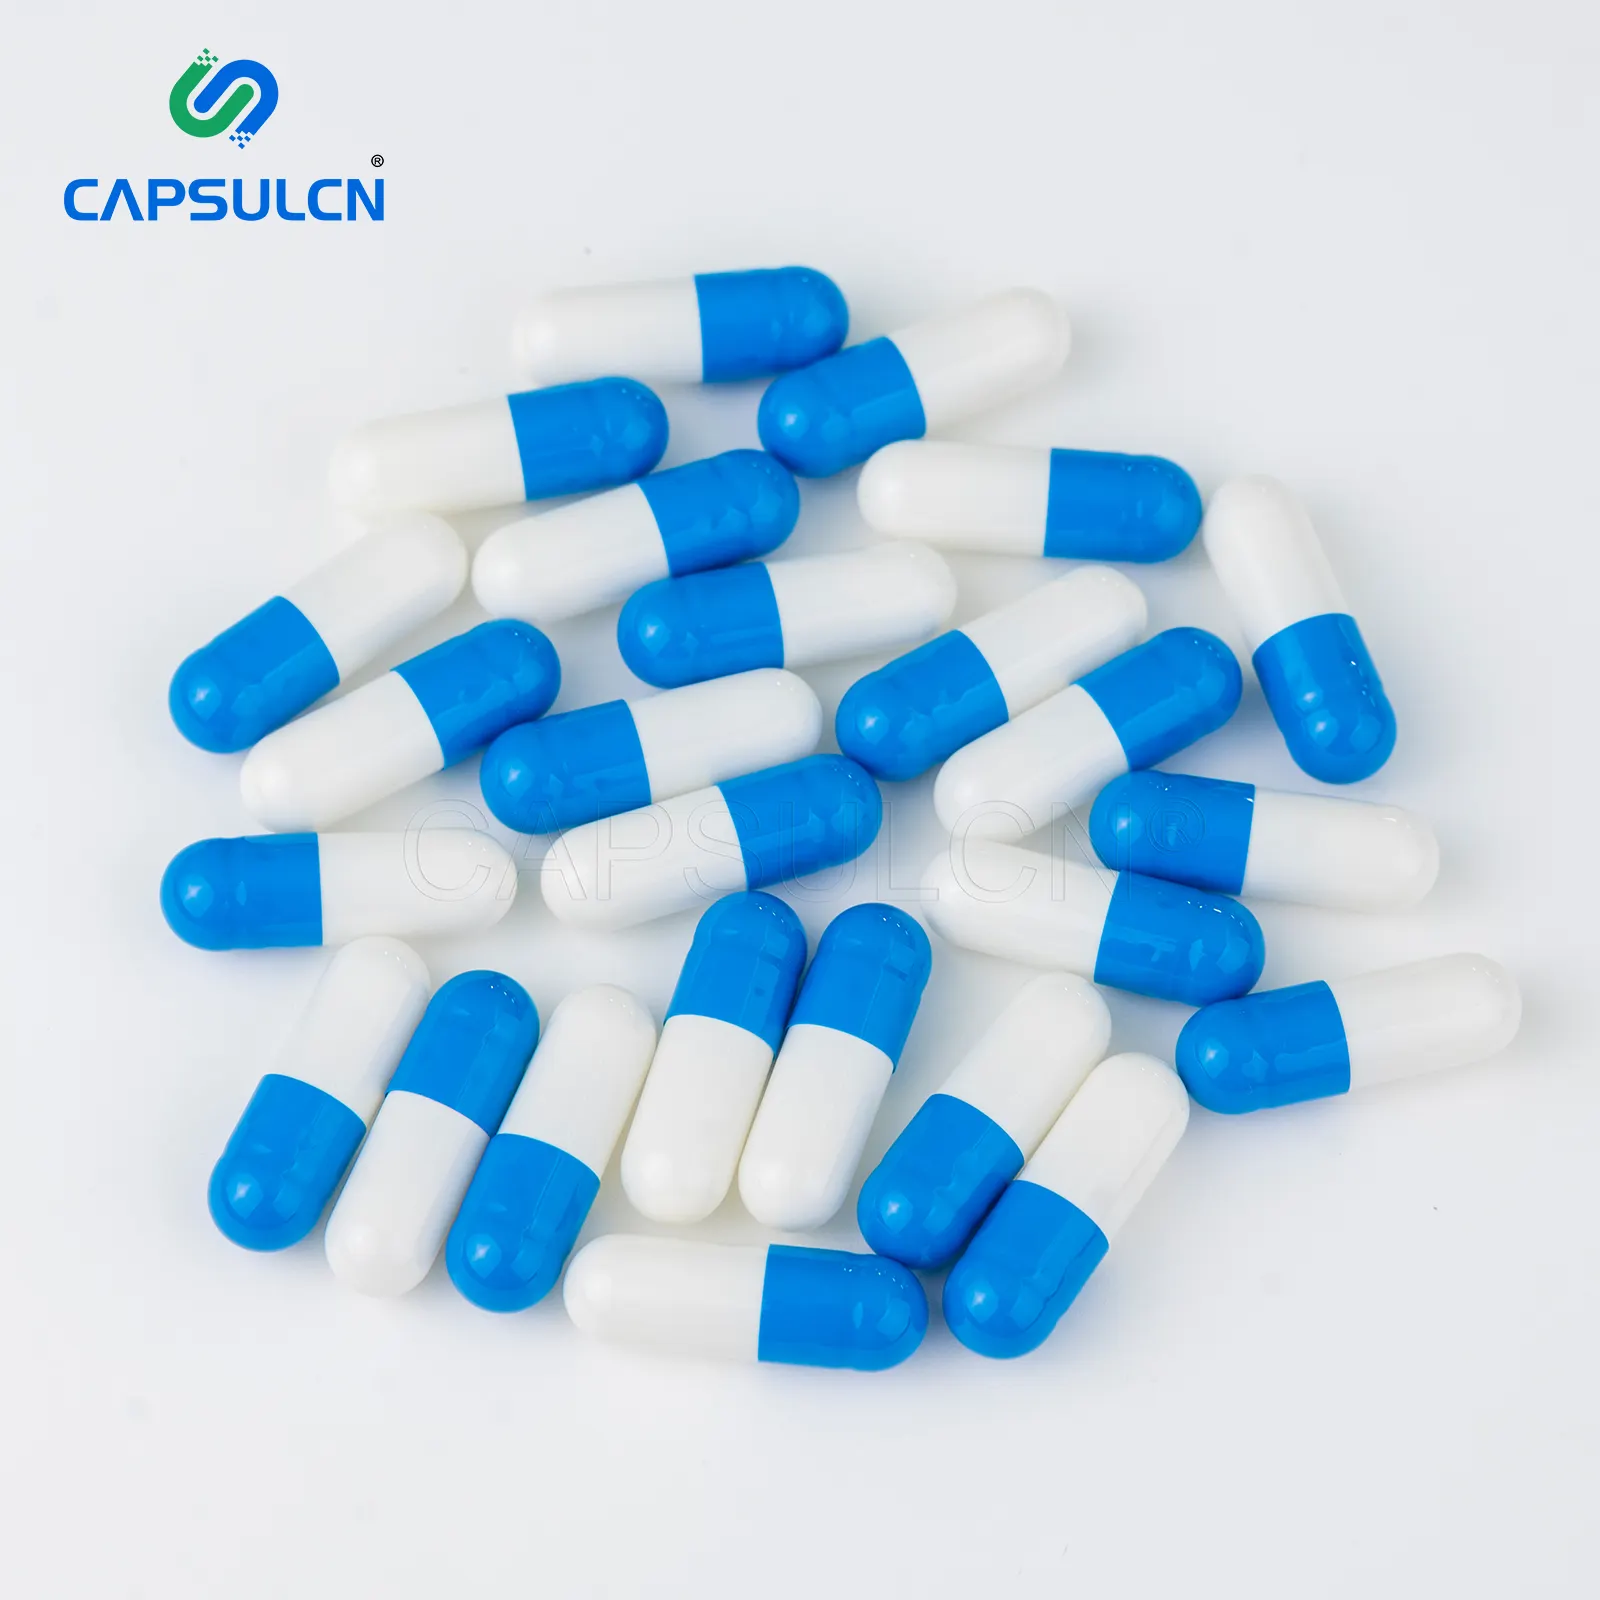 Capsula farmaceutica vuota all'ingrosso capsula di gelatina bianca blu Capsule di gelatina dura vuote